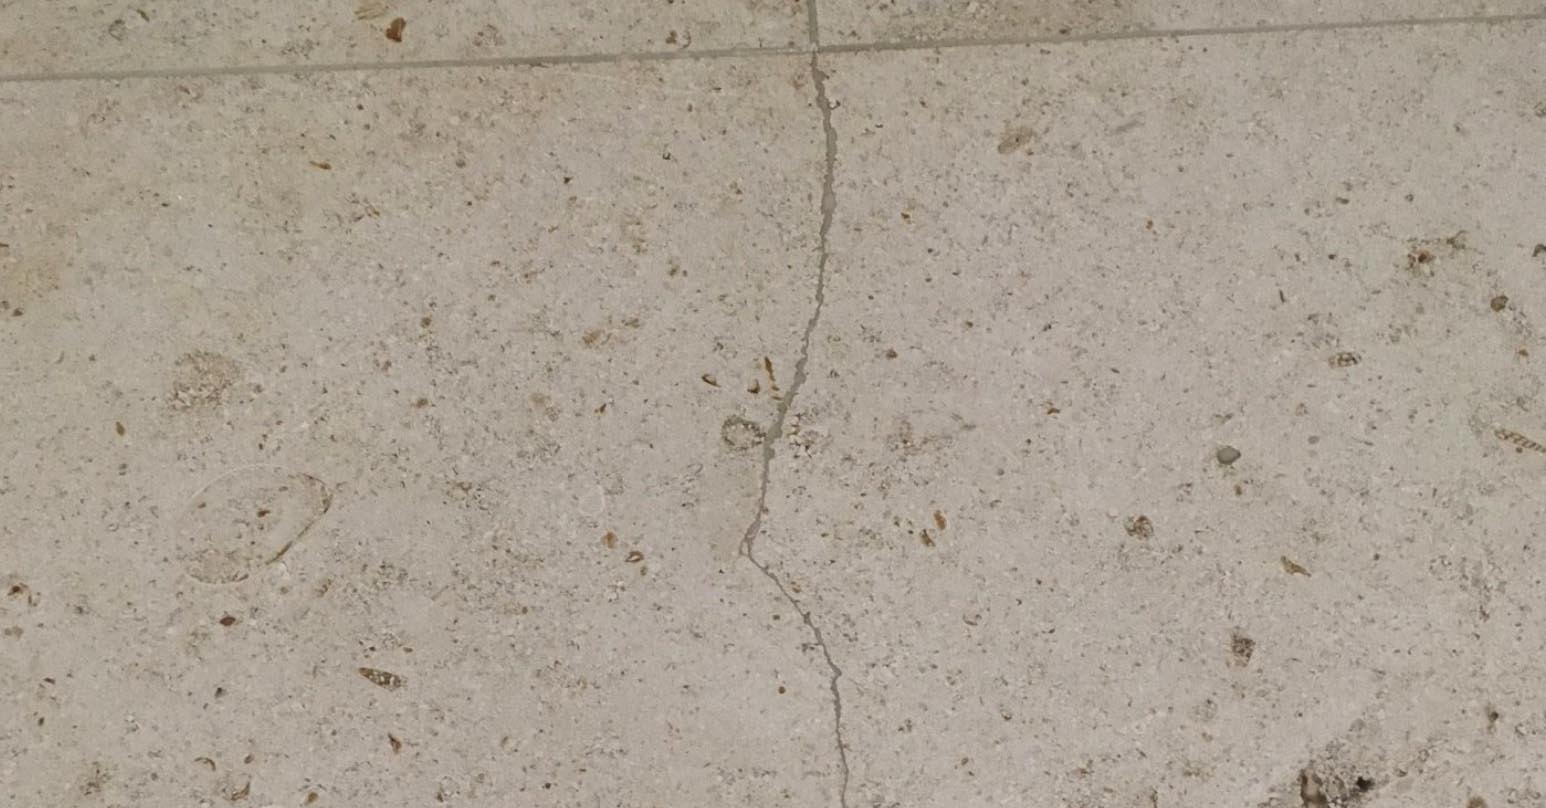 Cracked floor tile - Before repair